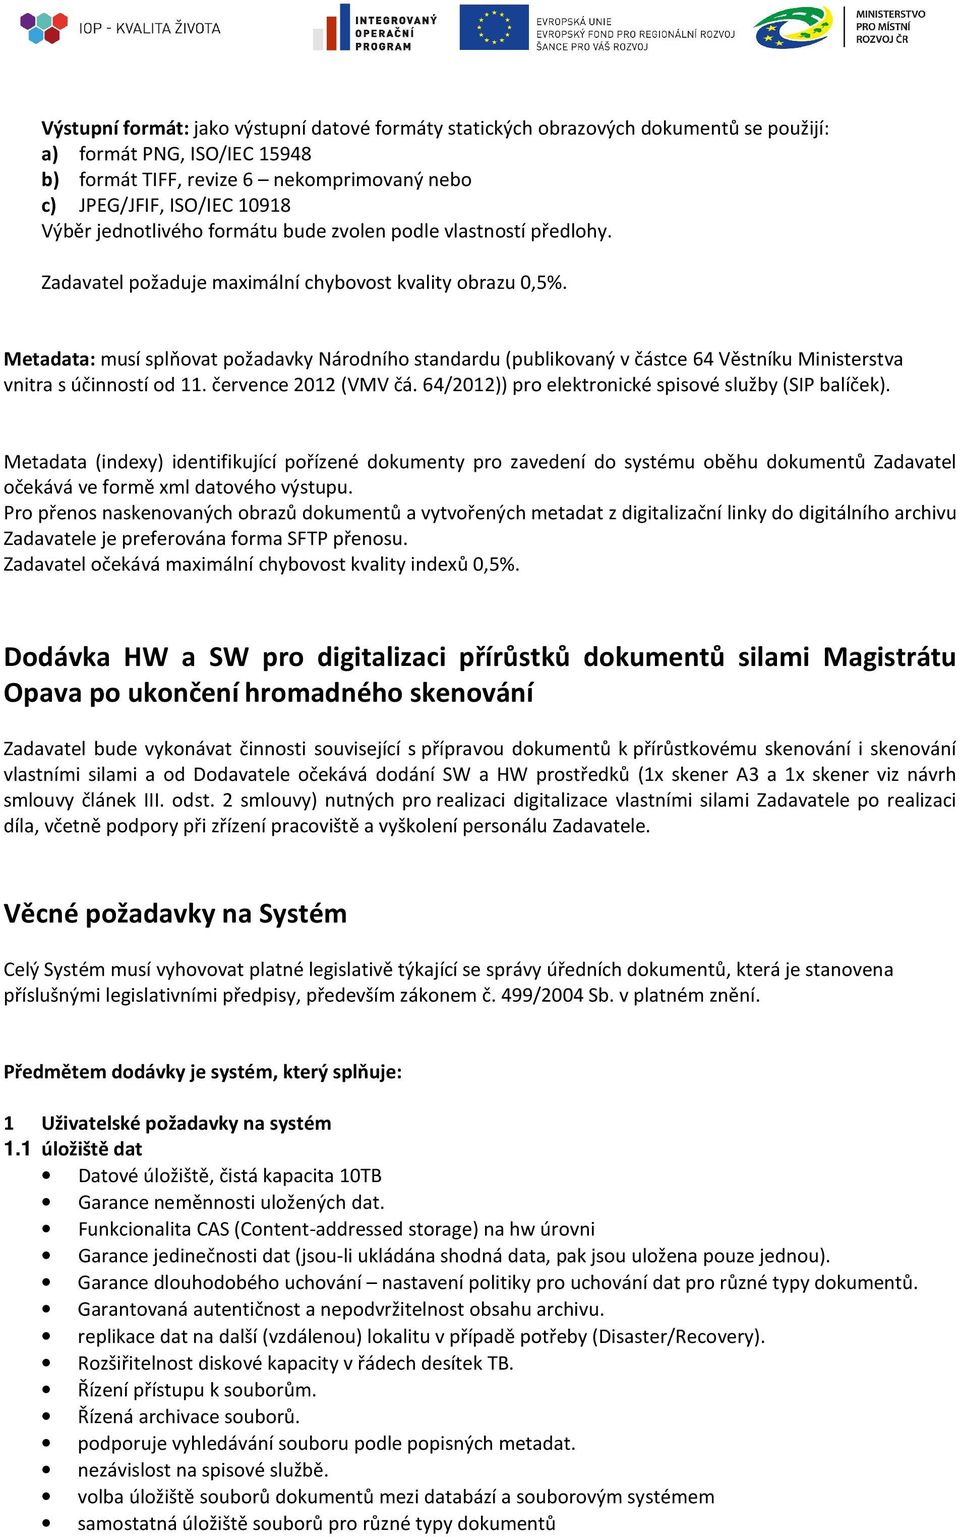 Metadata: musí splňvat pžadavky Nárdníh standardu (publikvaný v částce 64 Věstníku Ministerstva vnitra s účinnstí d 11. července 2012 (VMV čá. 64/2012)) pr elektrnické spisvé služby (SIP balíček).